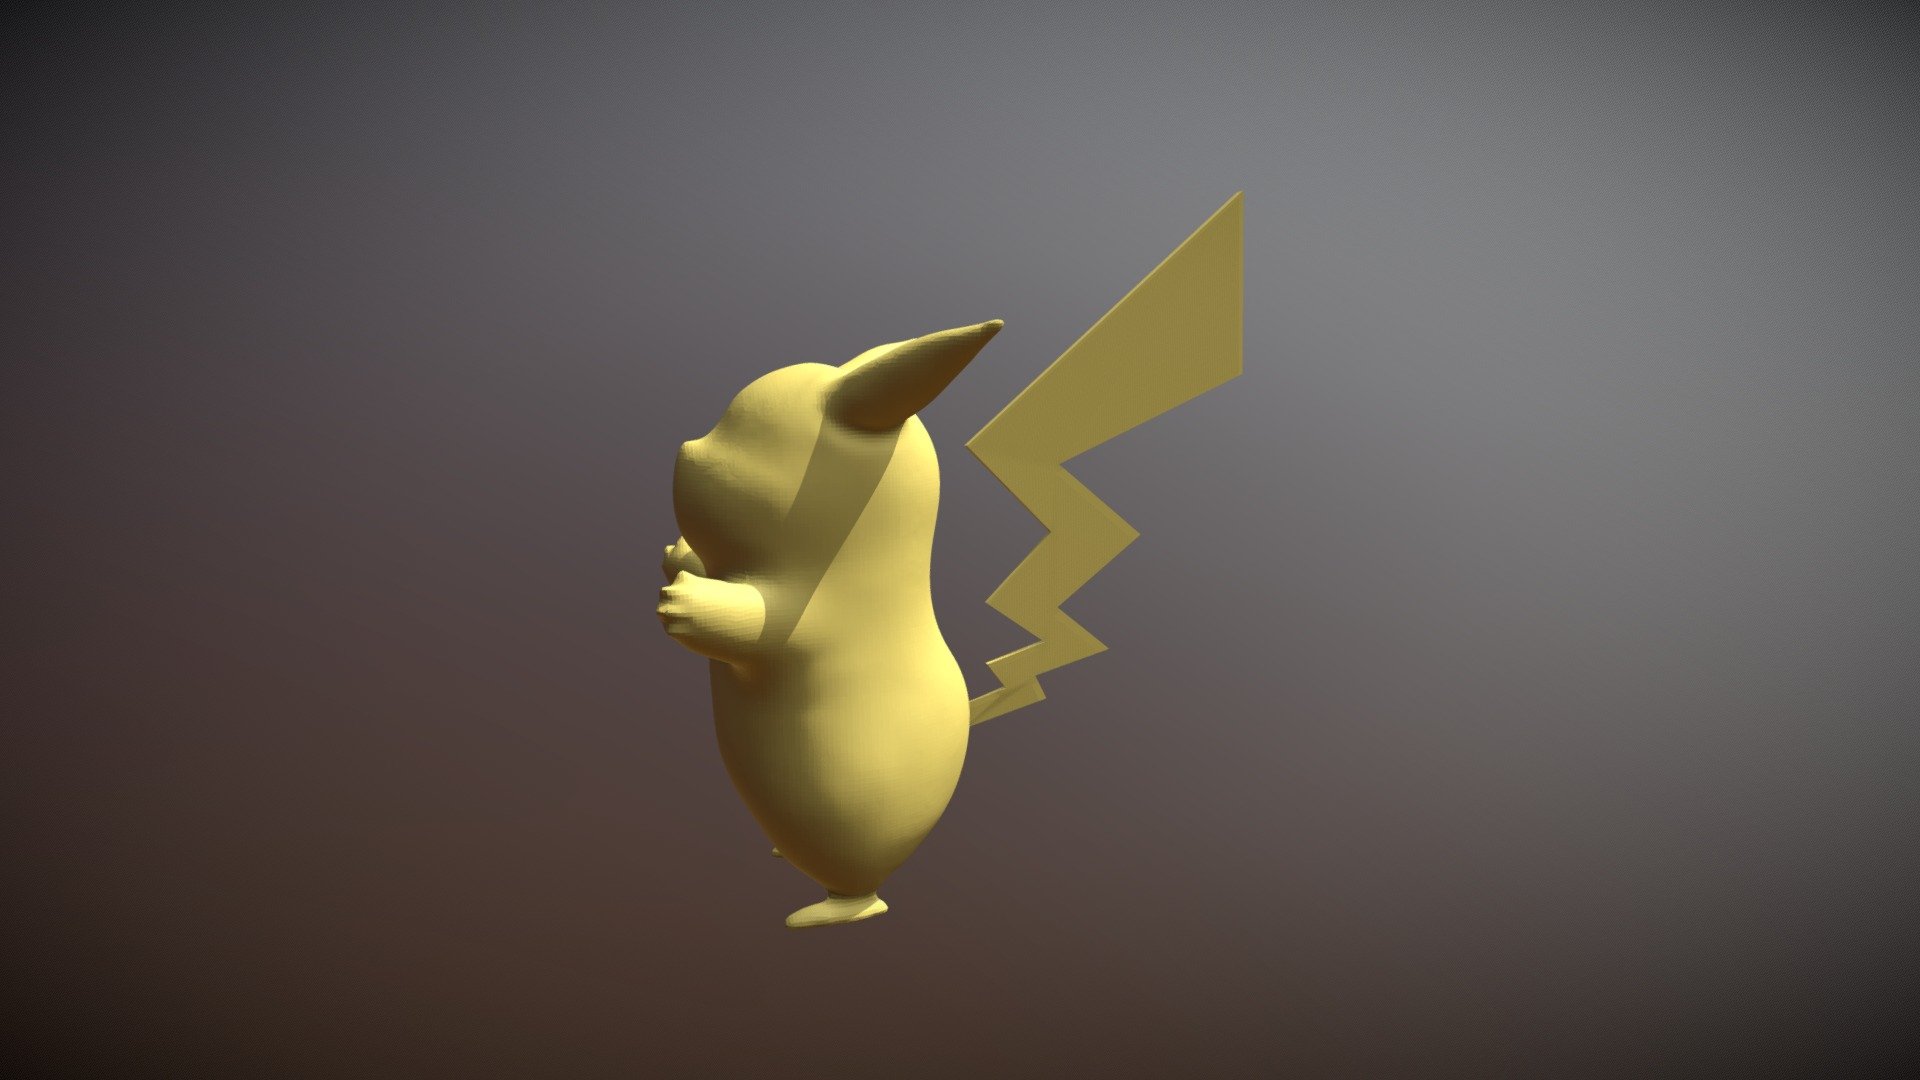 Pikachu Sculpting